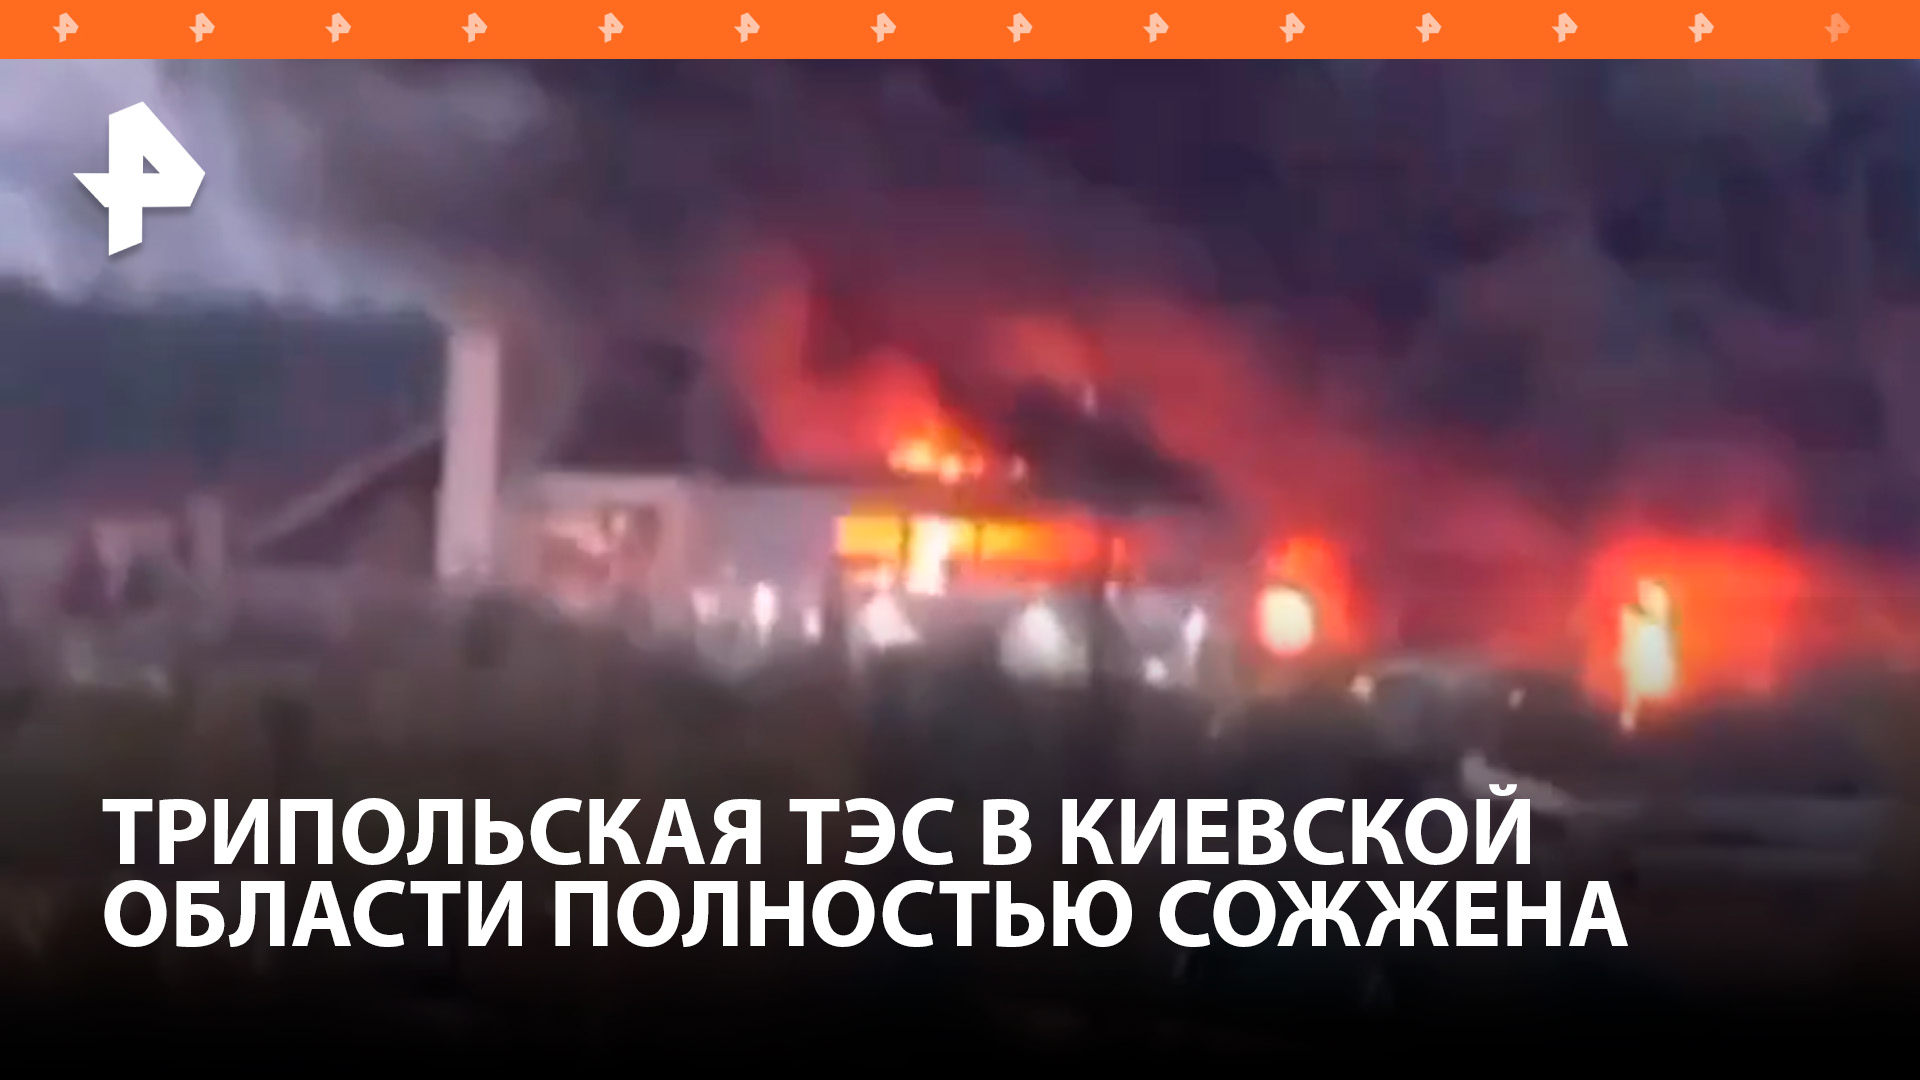 Пожар произошел на Трипольской ТЭС под Киевом после взрывов: она уничтожена / РЕН Новости